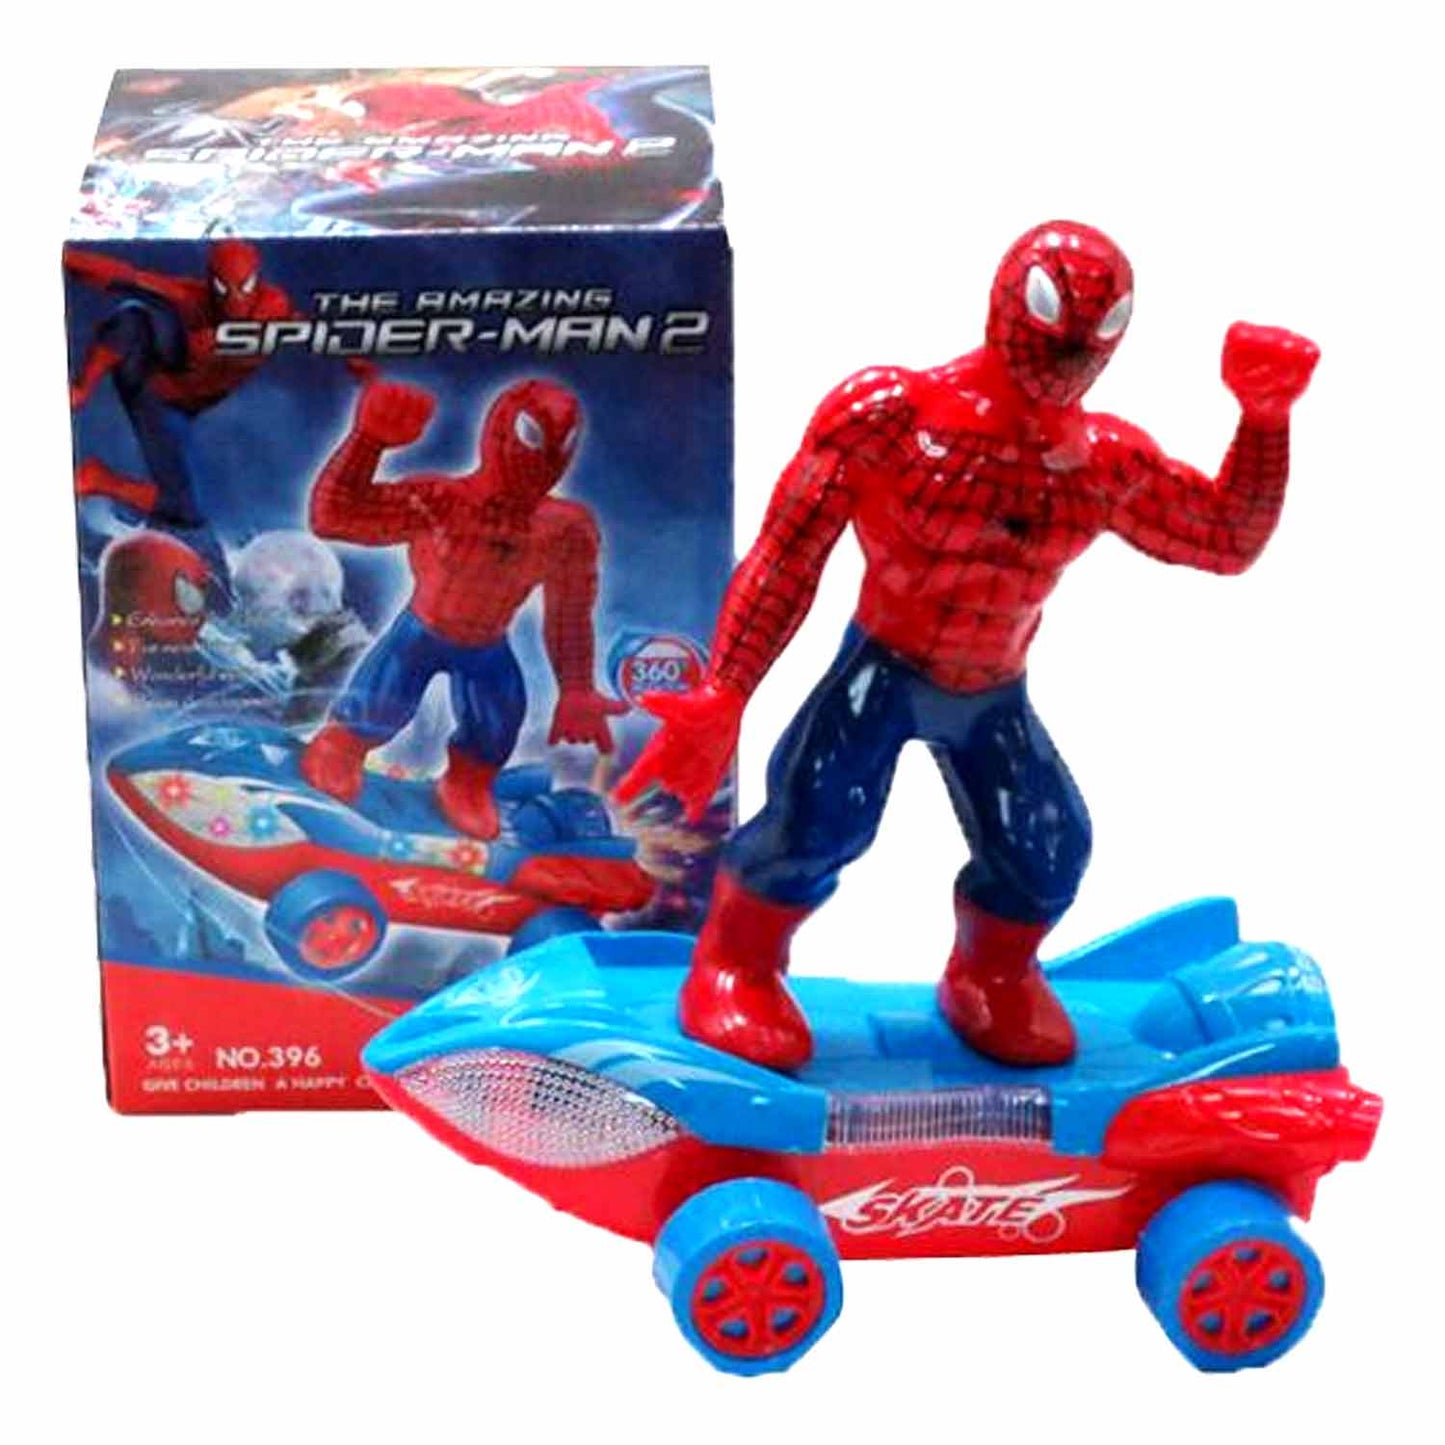 Skateboard Spider-Man